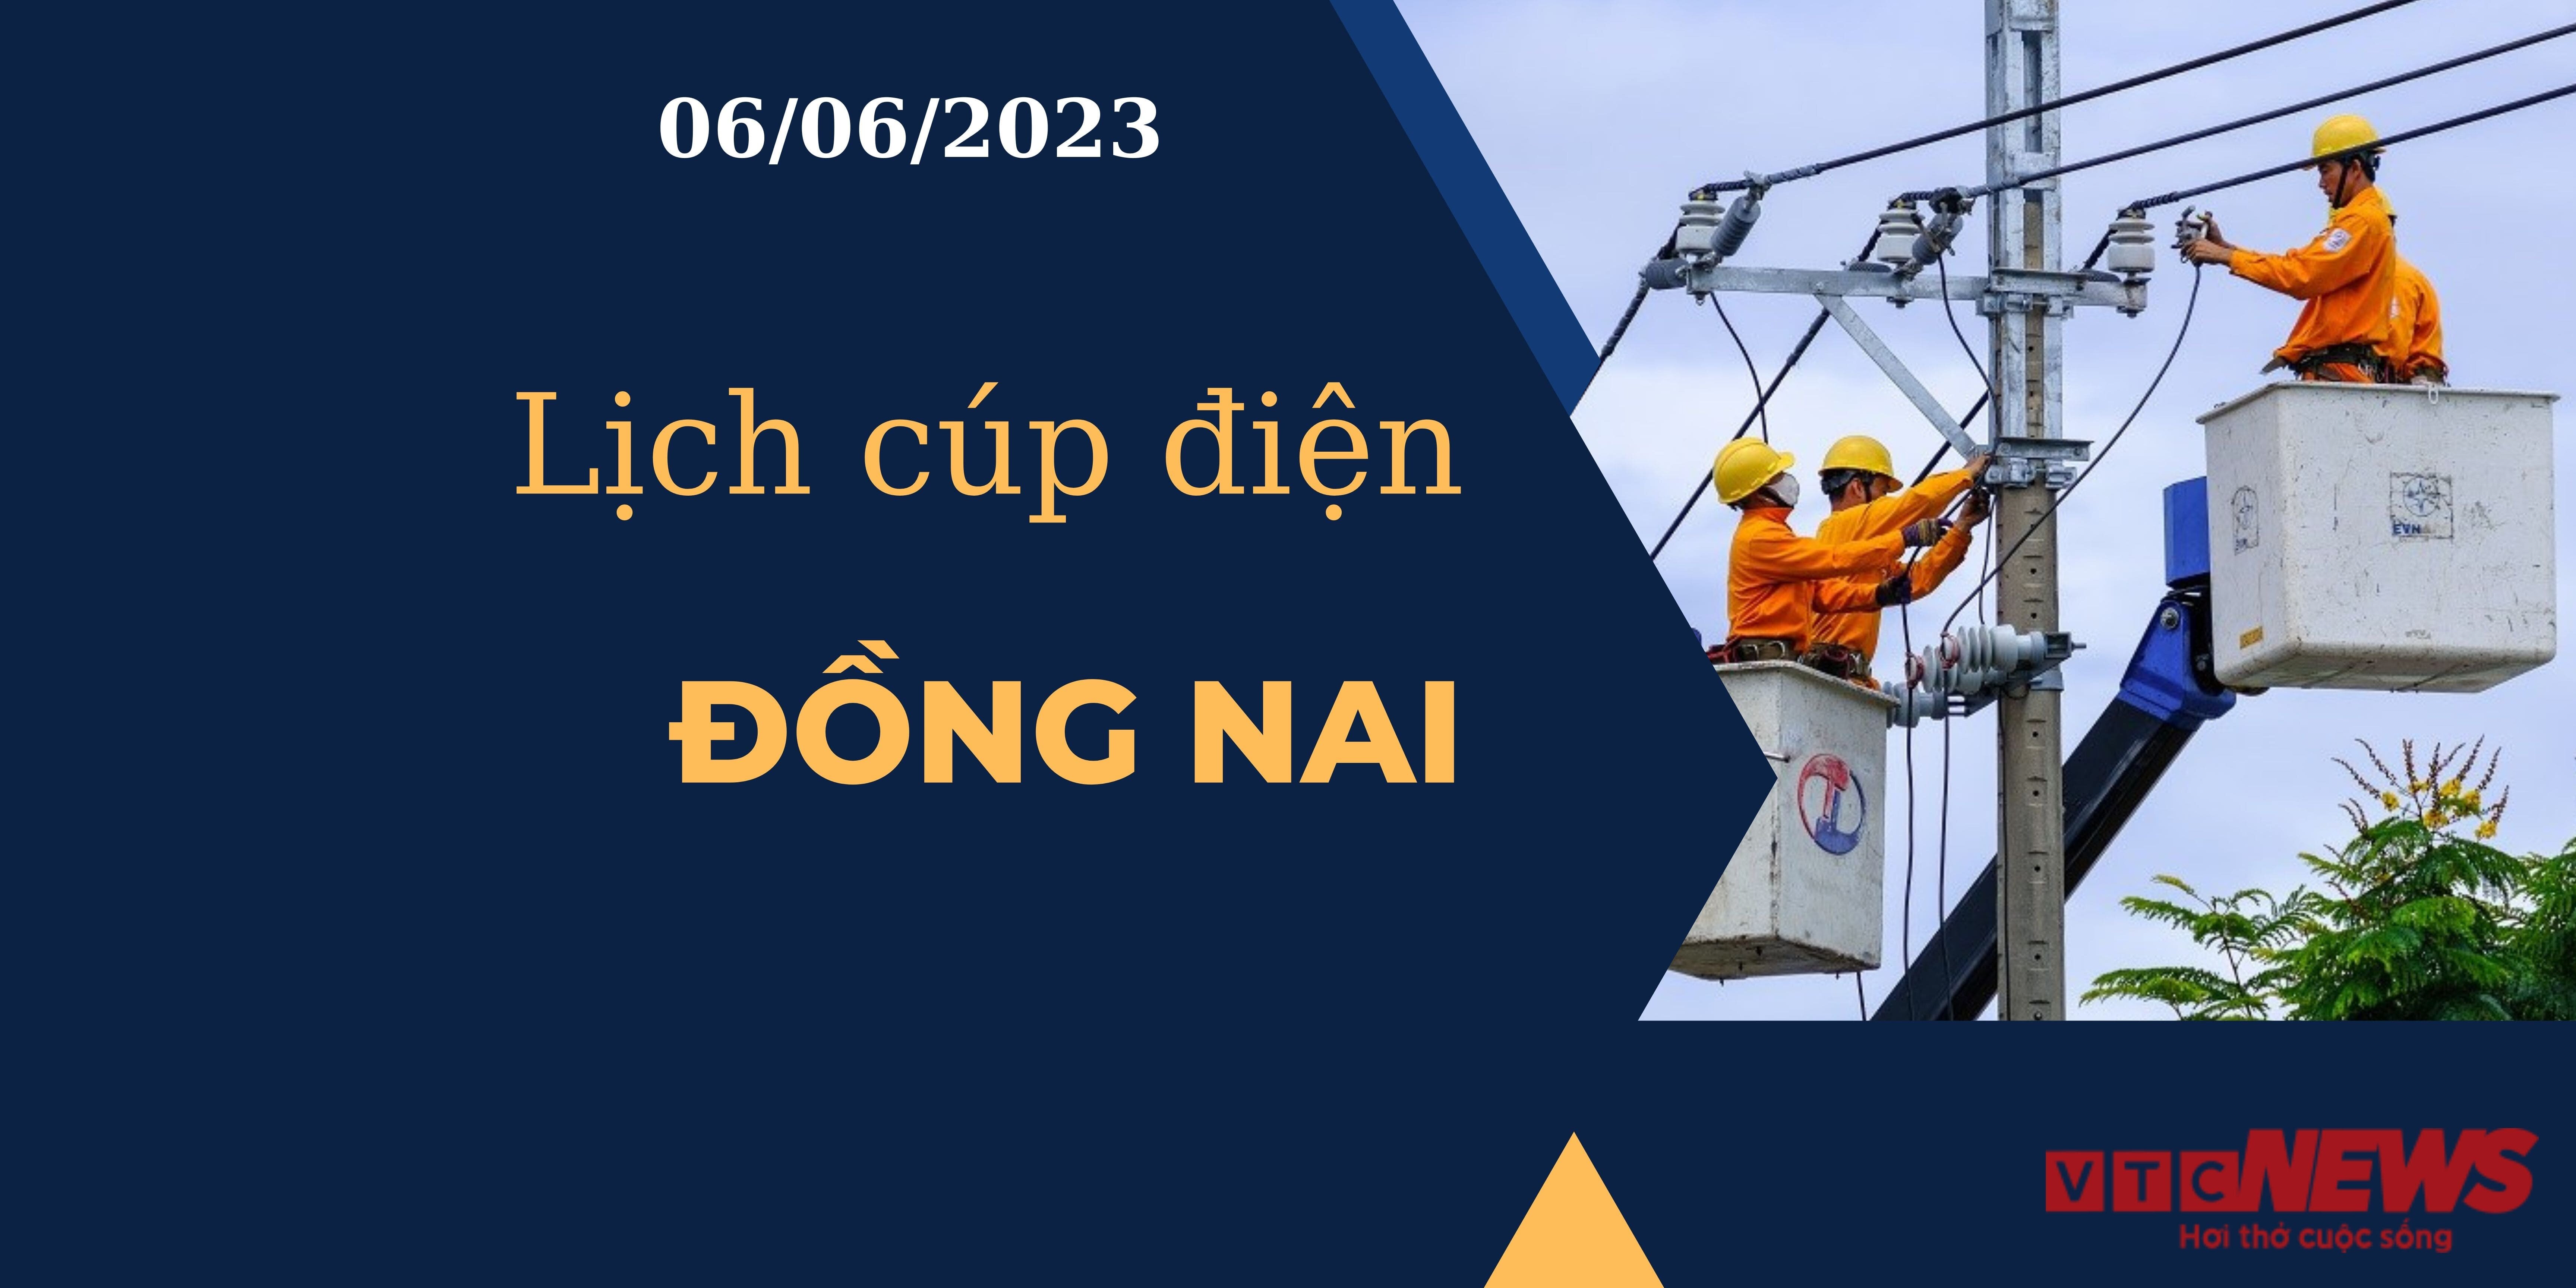 Lịch cúp điện hôm nay ngày 06/06/2023 tại Đồng Nai - 1